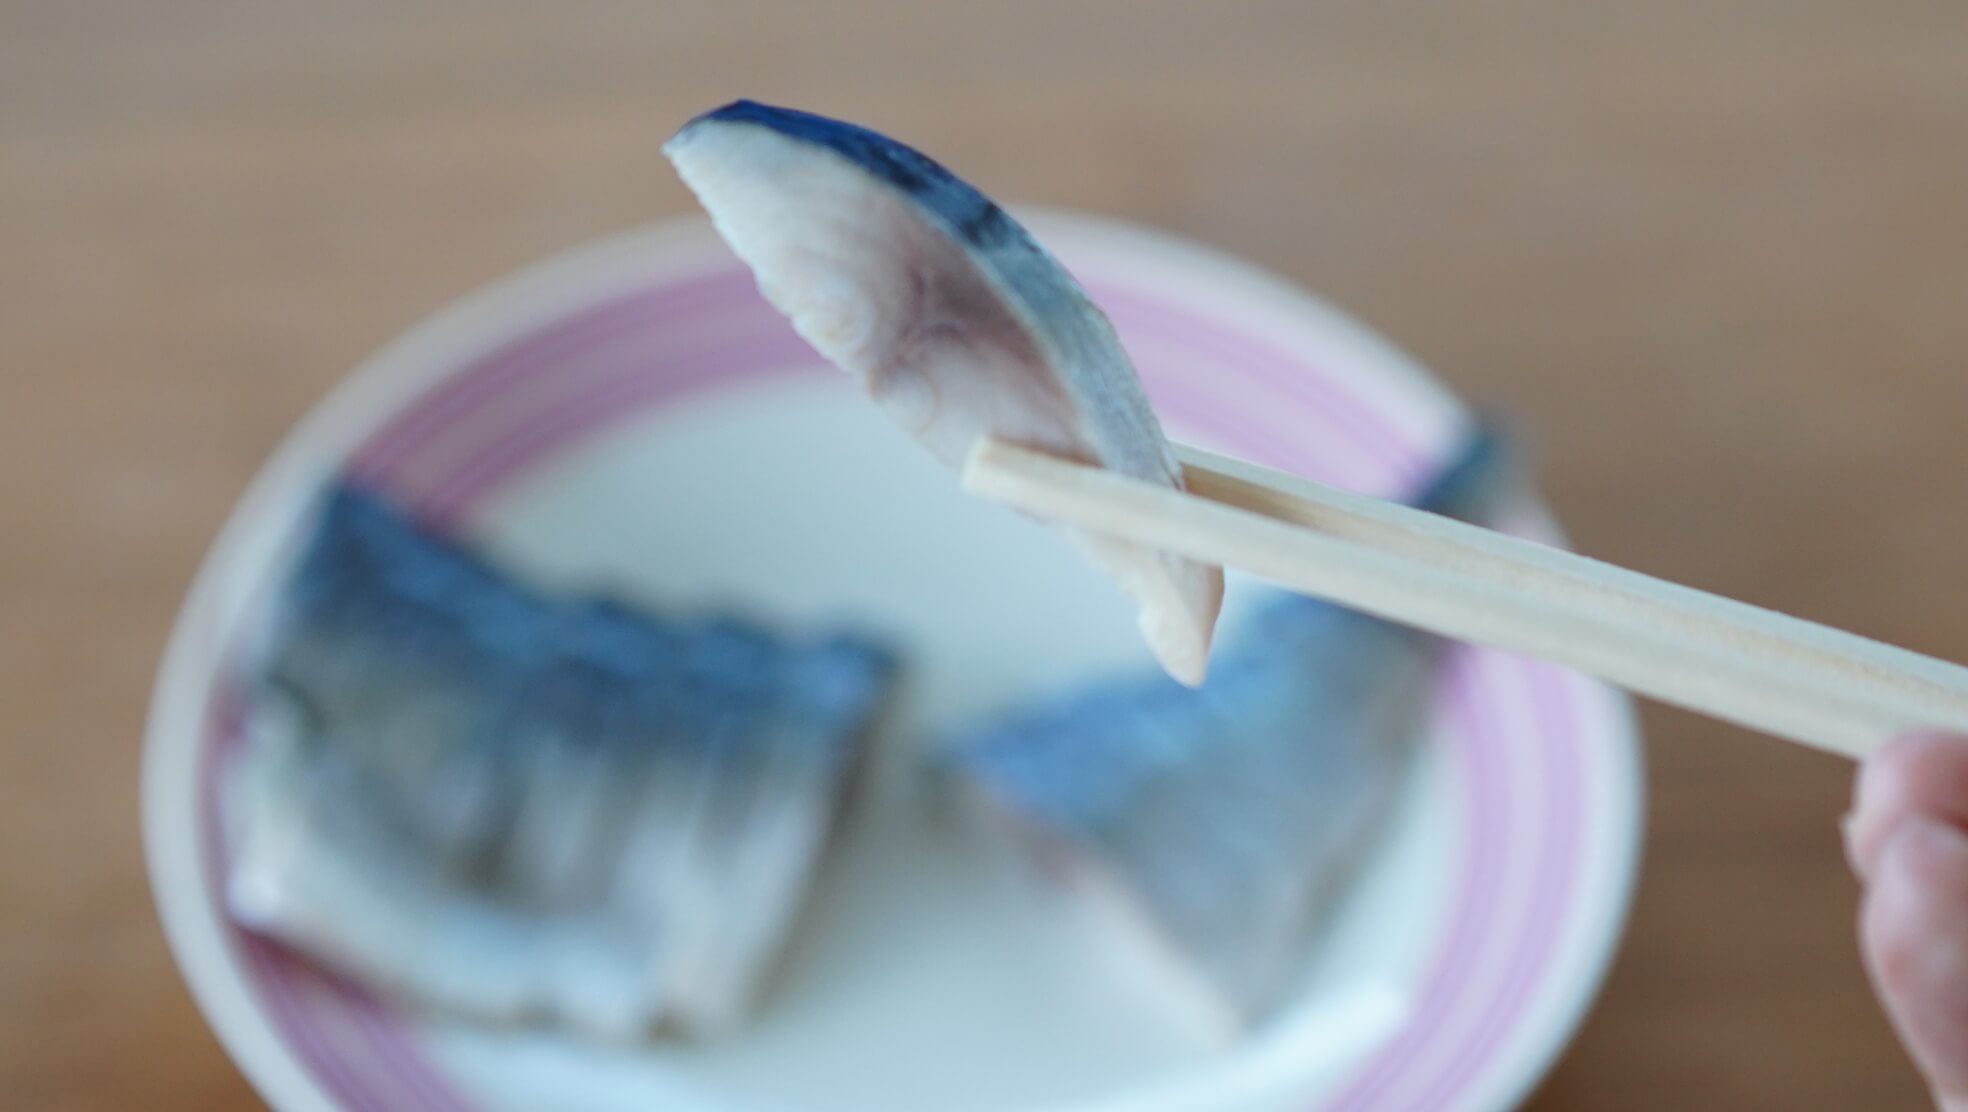 生協（コープ）の冷凍食品「国産素材・しめさば」の鯖を箸でつまんでいる写真